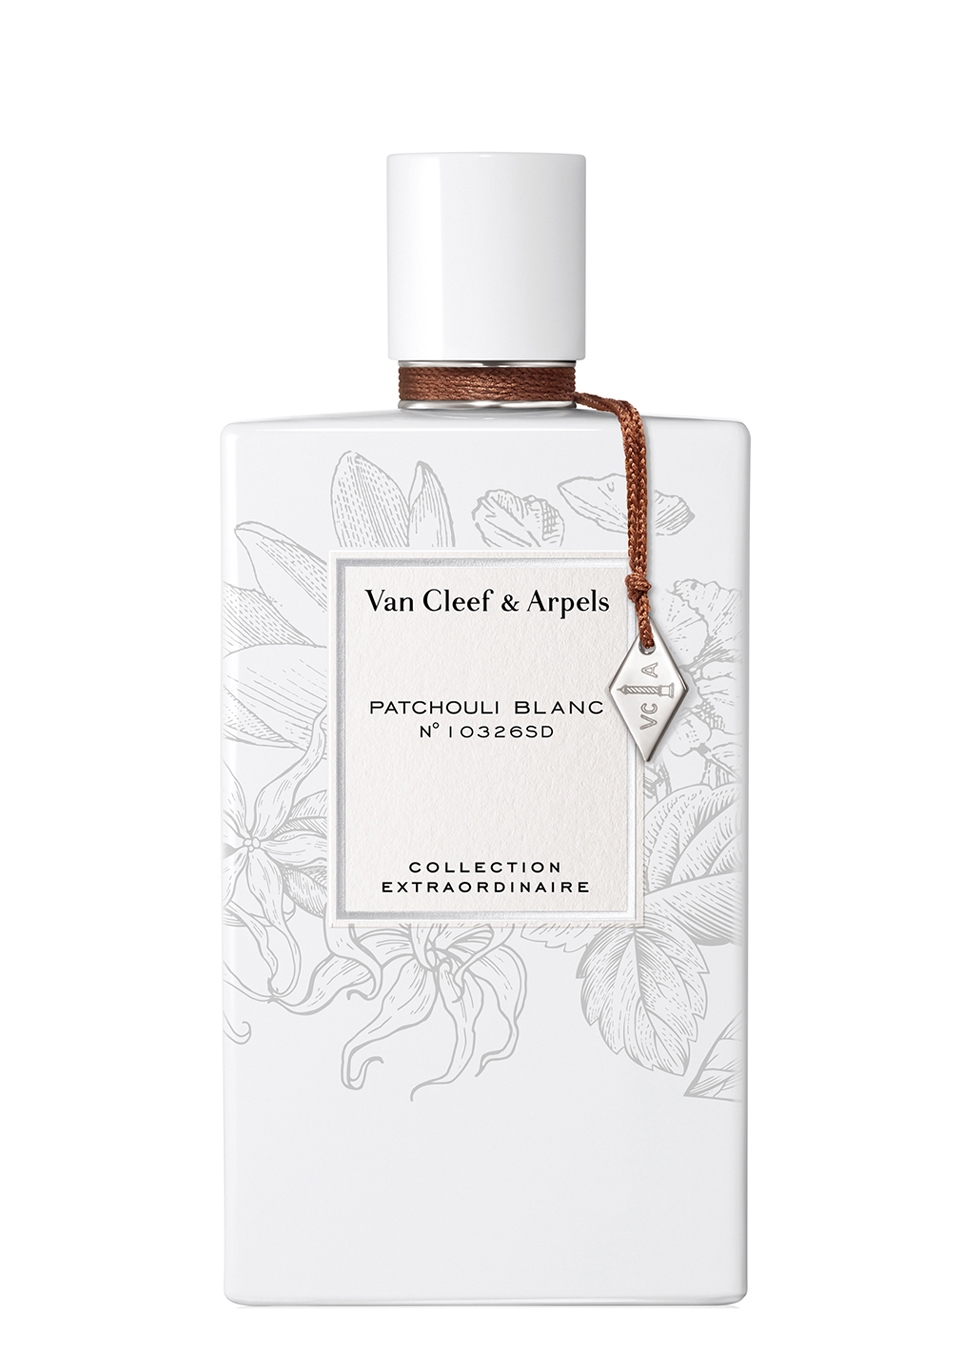 Van Cleef & Arpels Patchouli Blanc Eau De Parfum Feminine Floral 